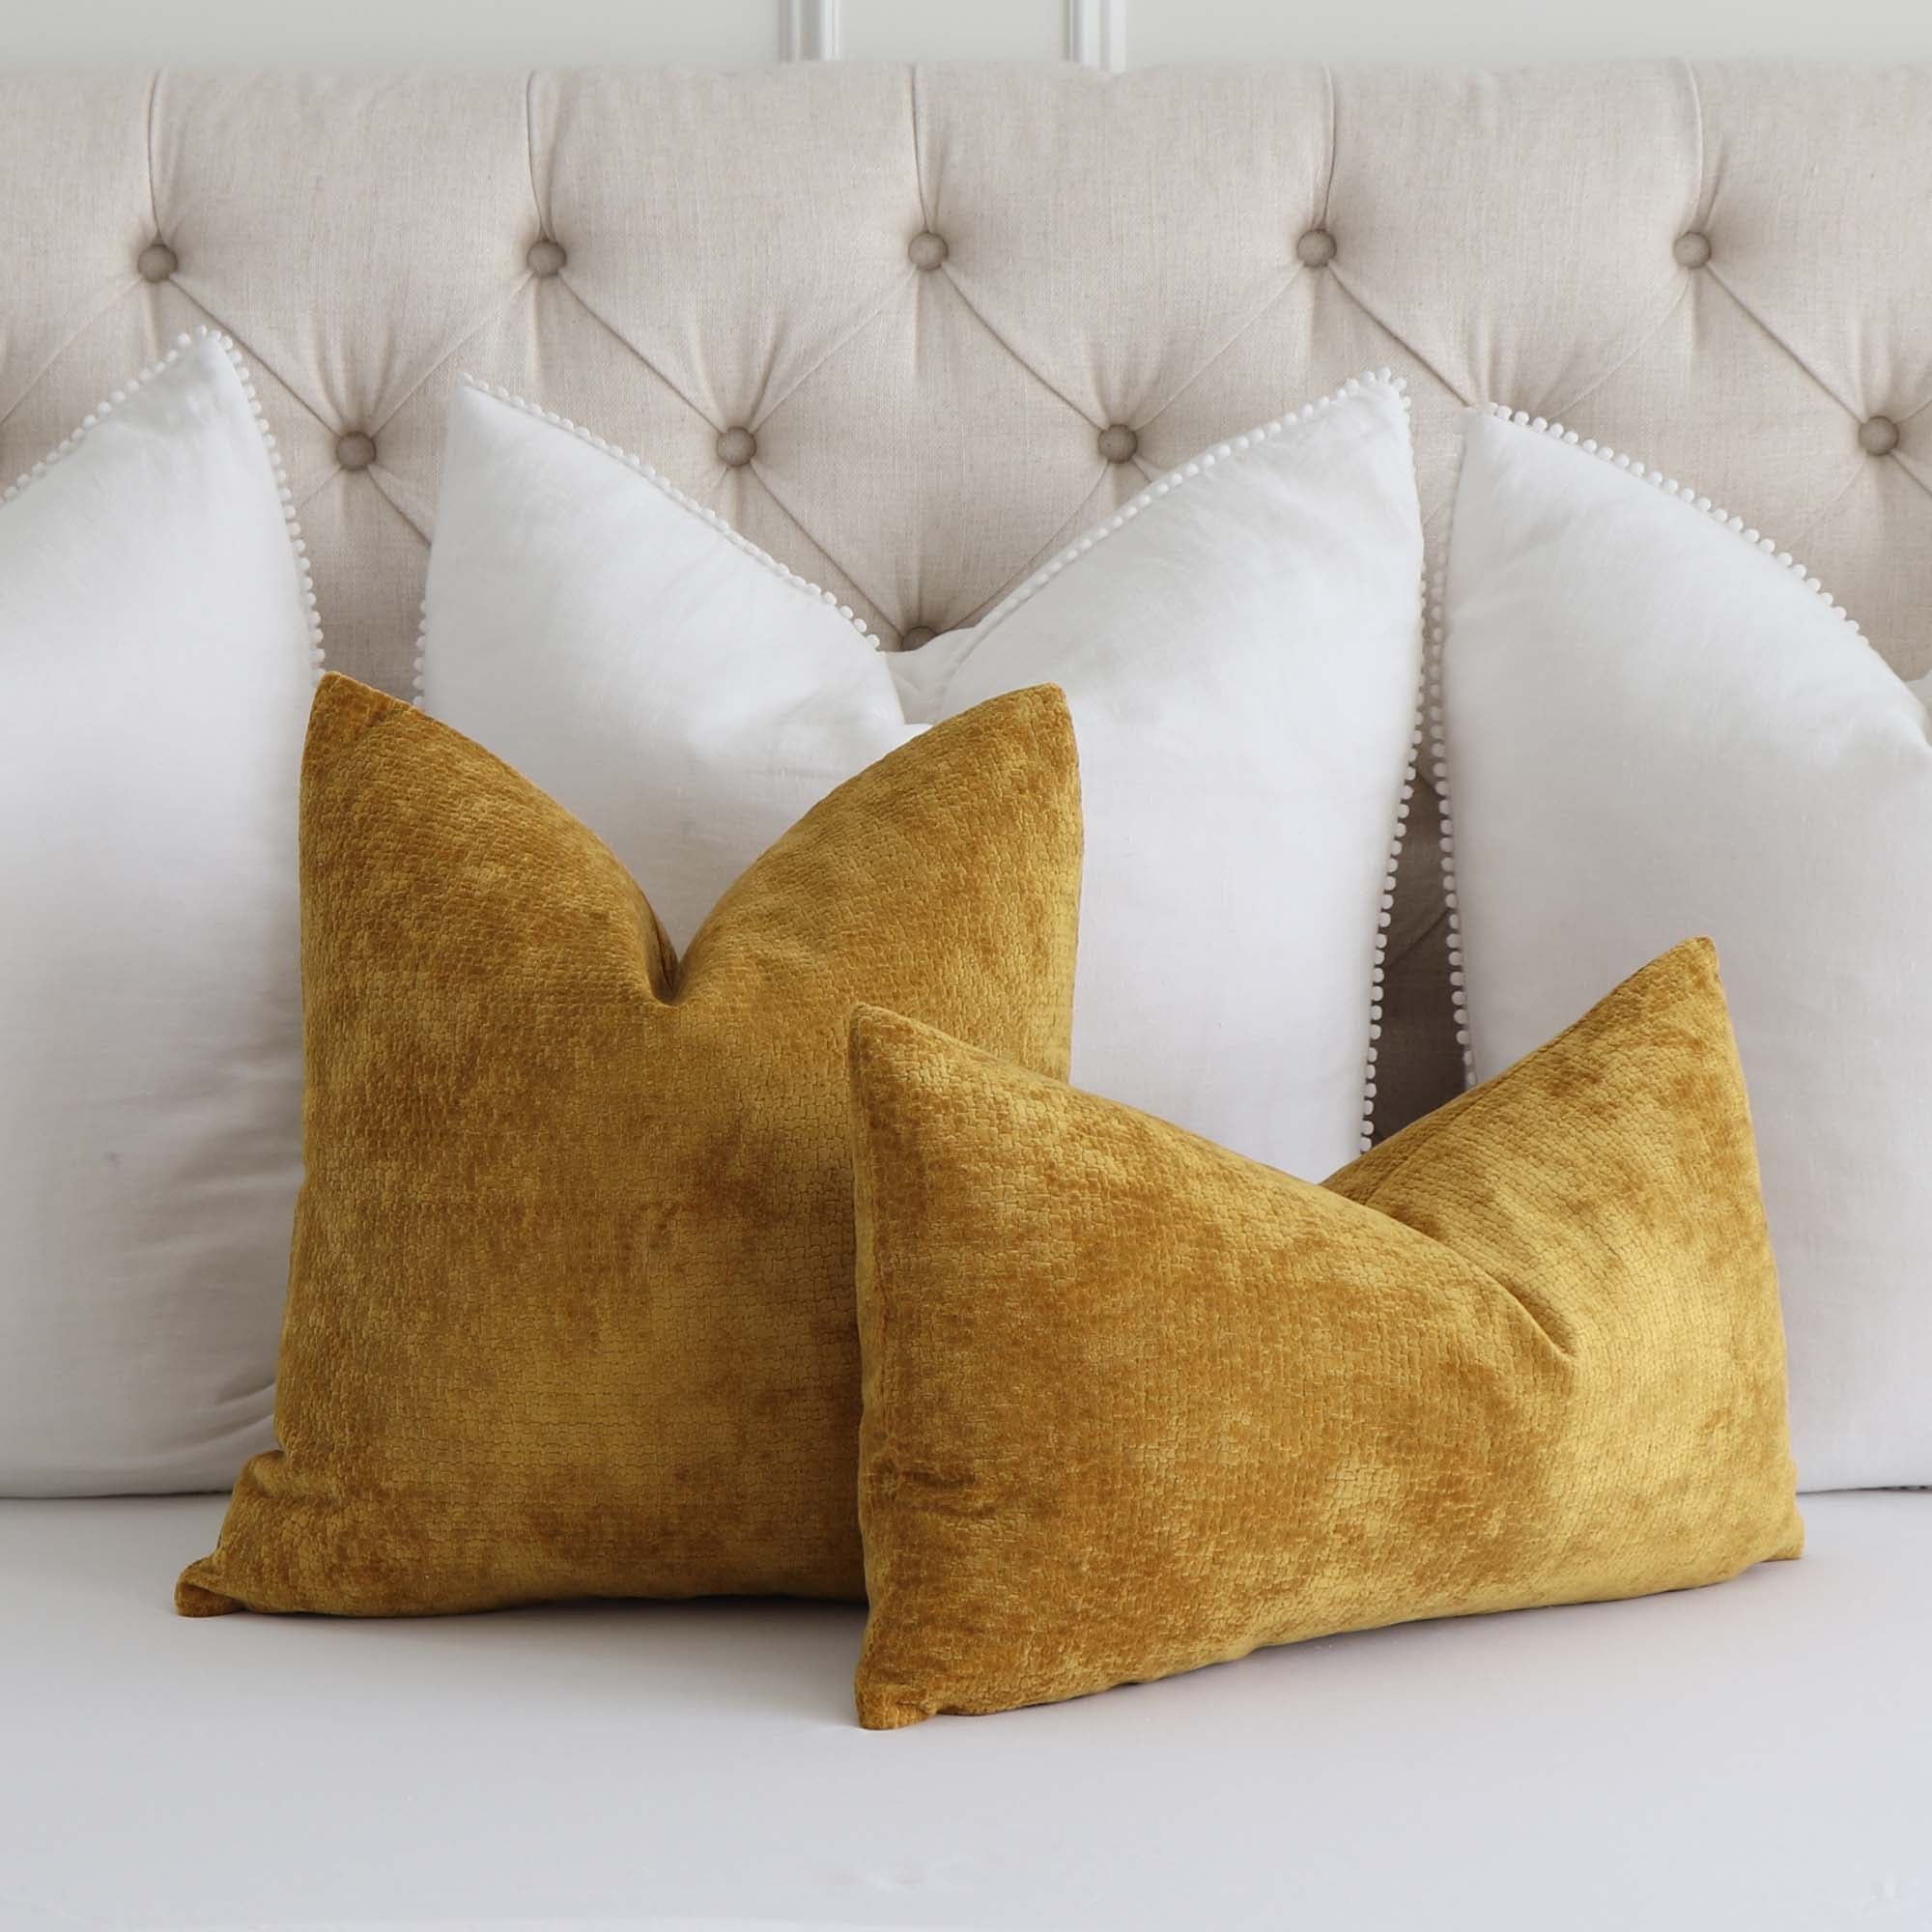 Kelly Wearstler Rebus Glint Gold Colored Soft Velvet Throw Pillow Cover -  Chloe & Olive